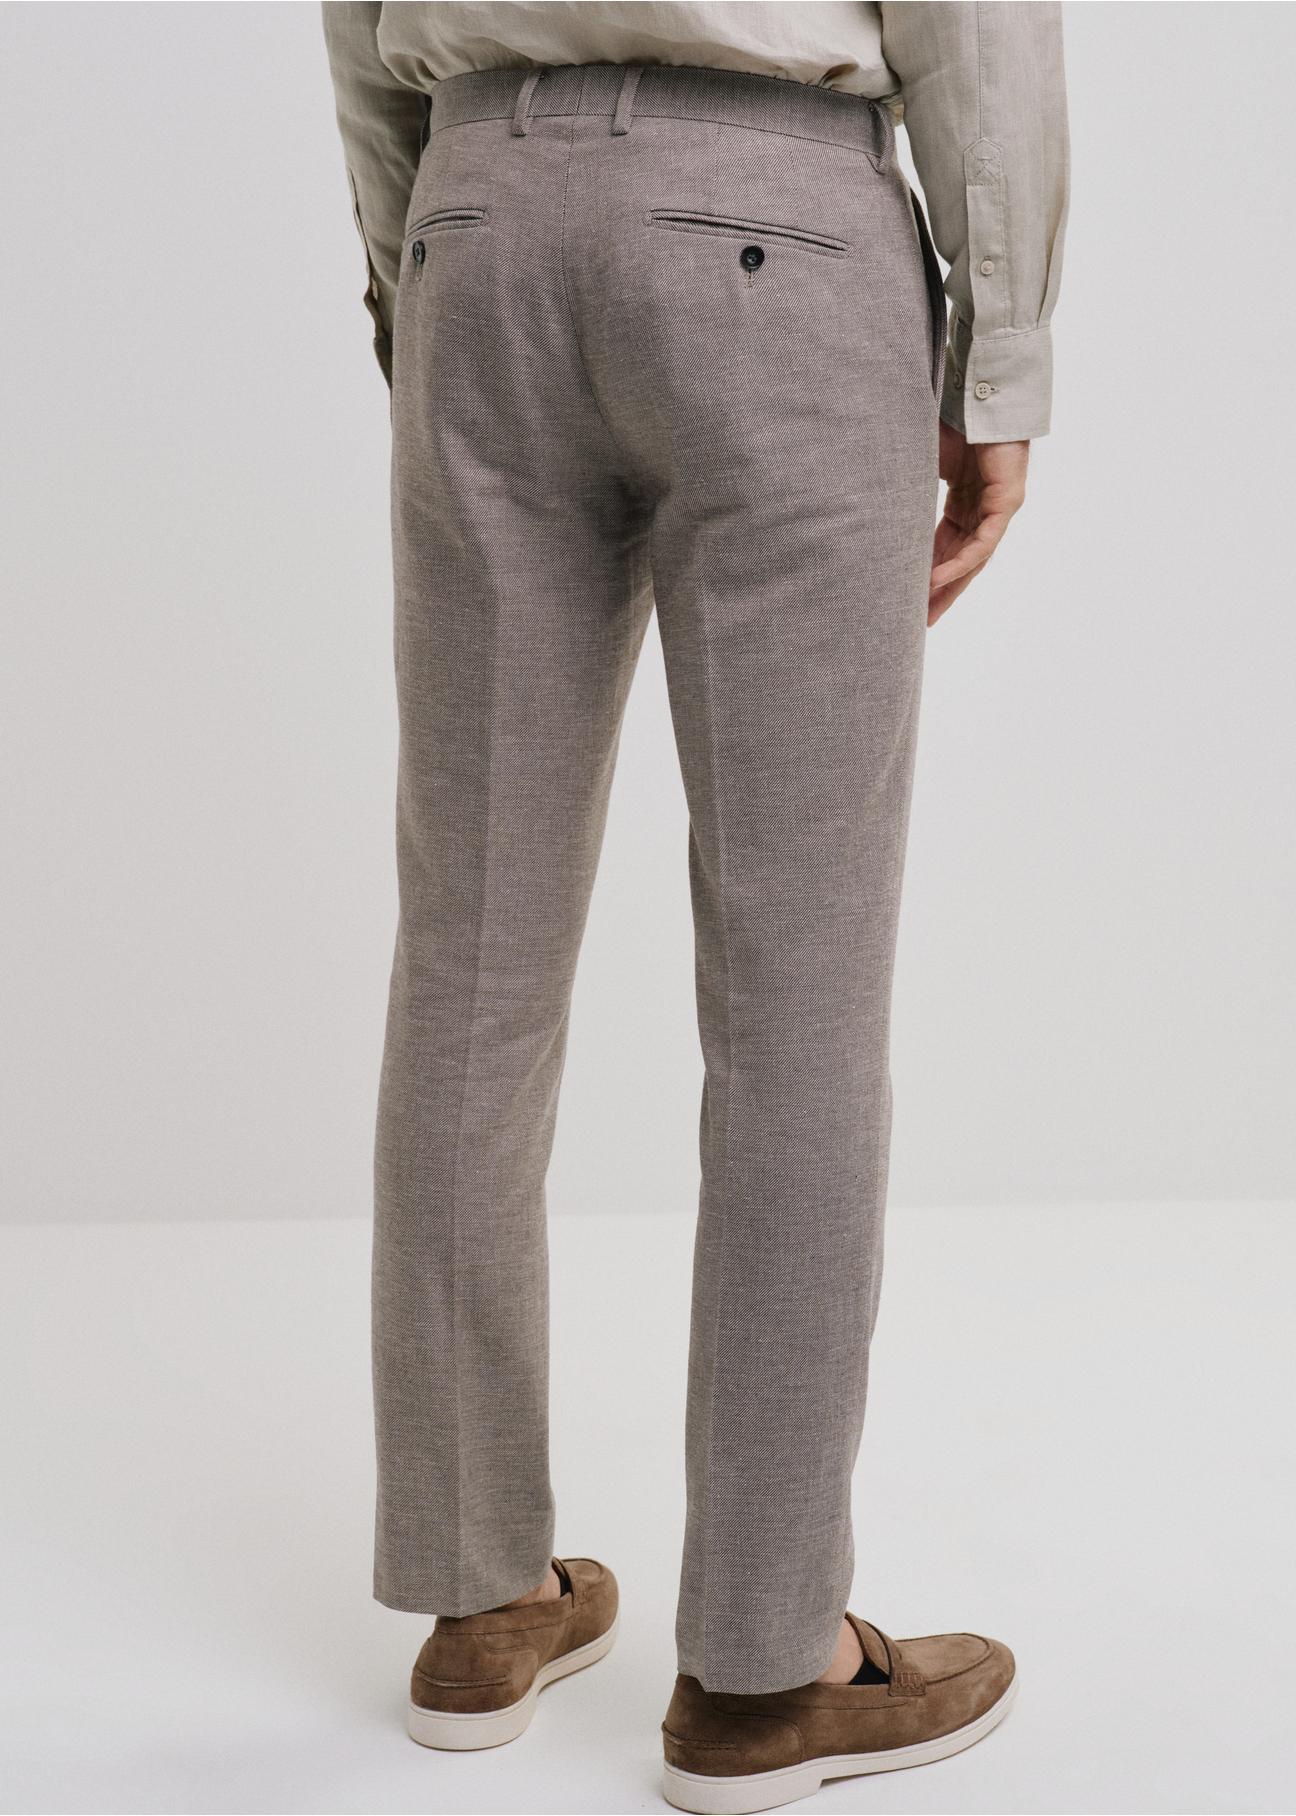 Beżowe spodnie garniturowe męskie SPOMT-0098-81(W24)